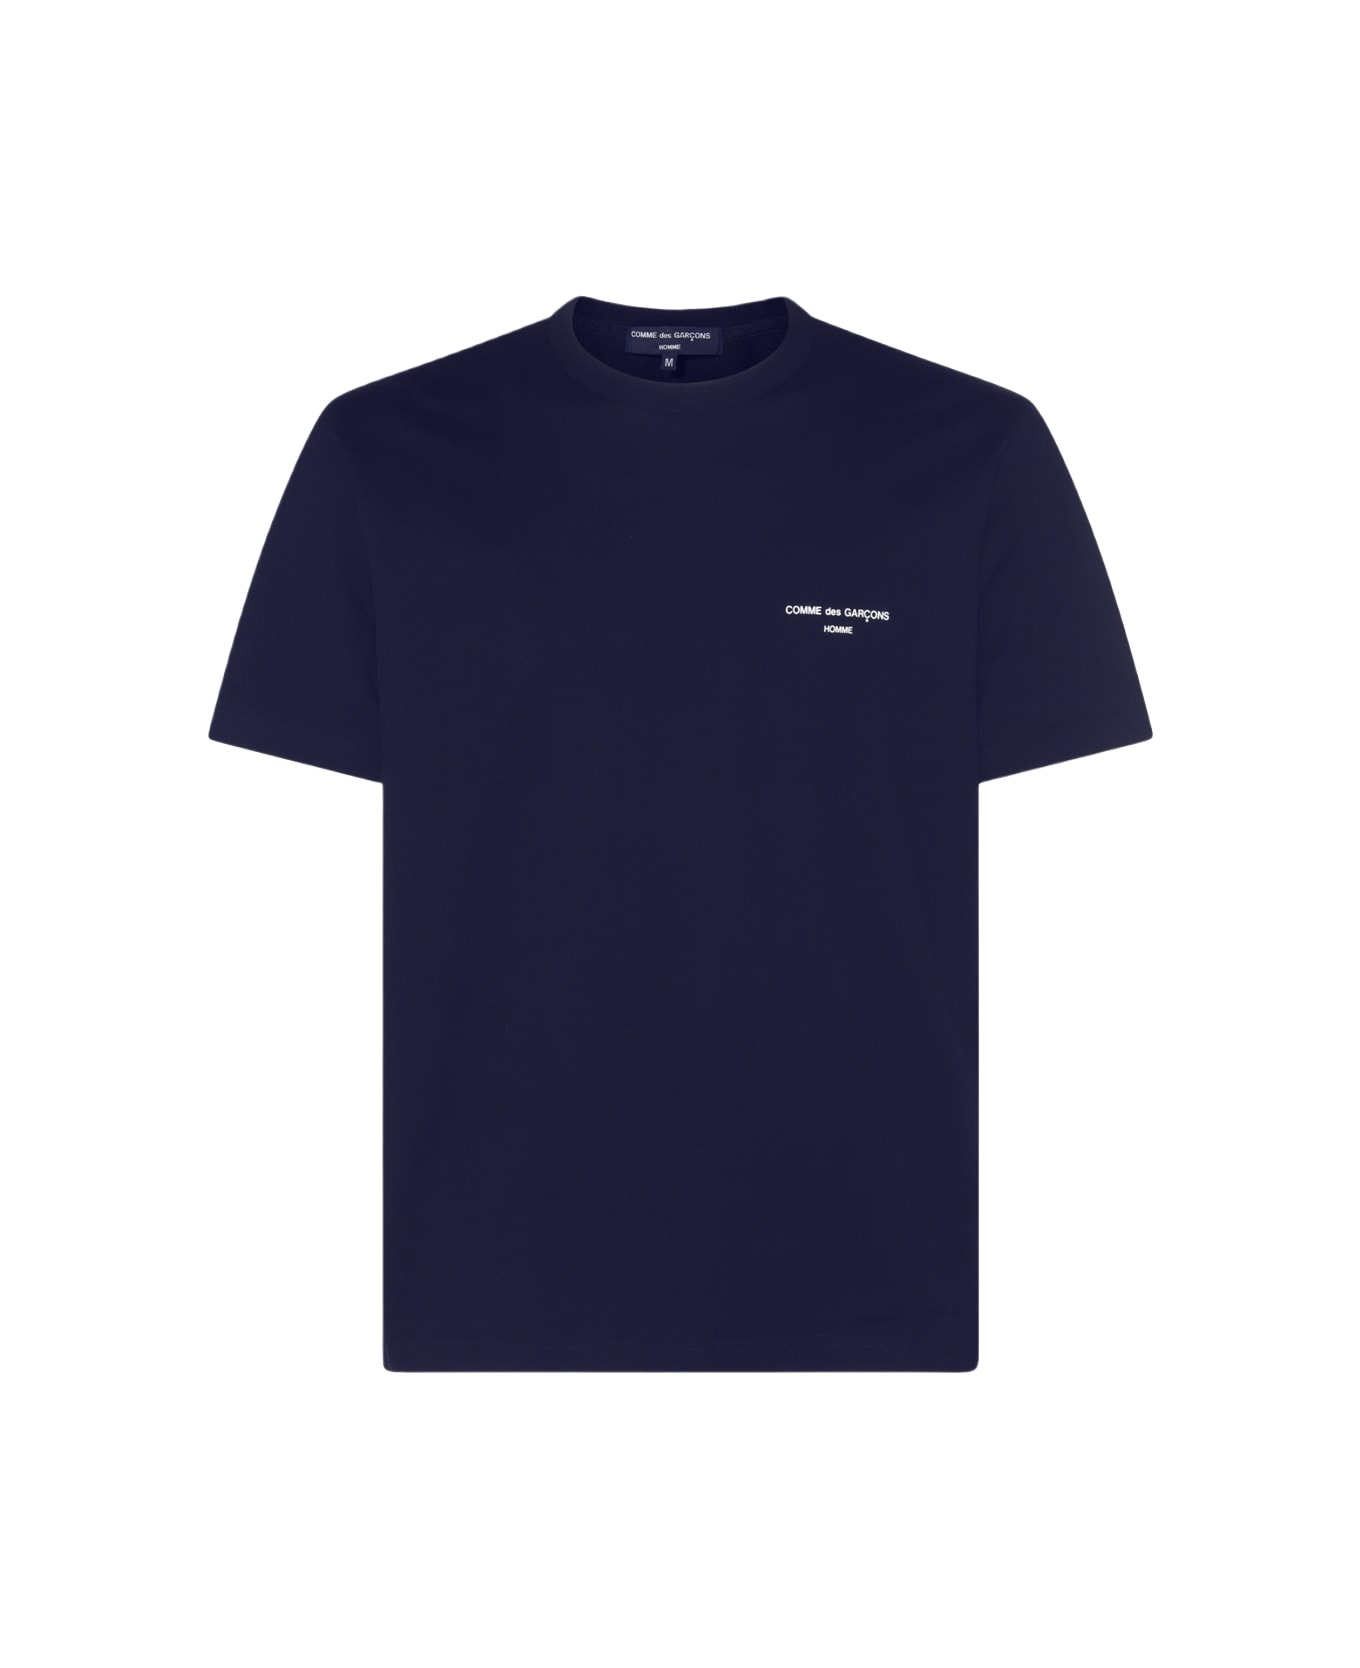 Comme des Garçons Homme Navy Cotton T-shirt - Blue シャツ